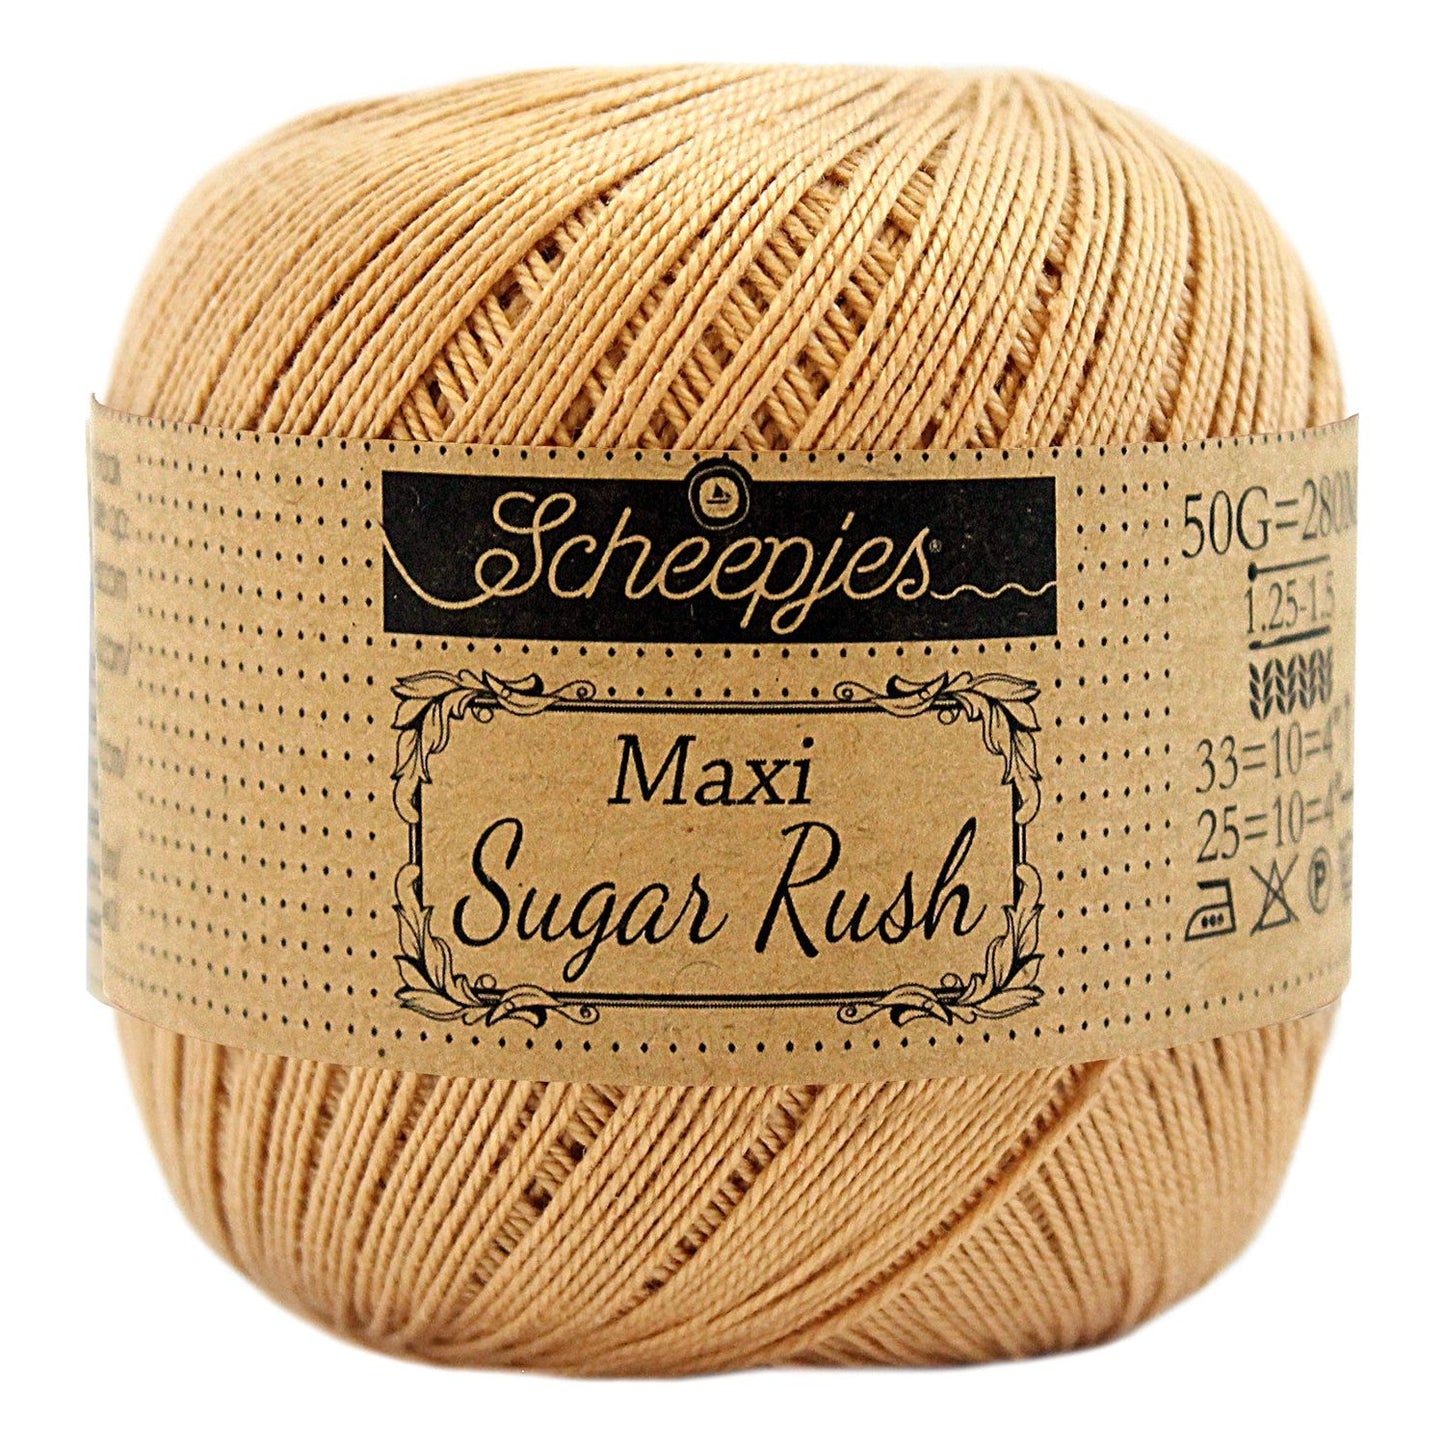 Maxi Sugar Rush